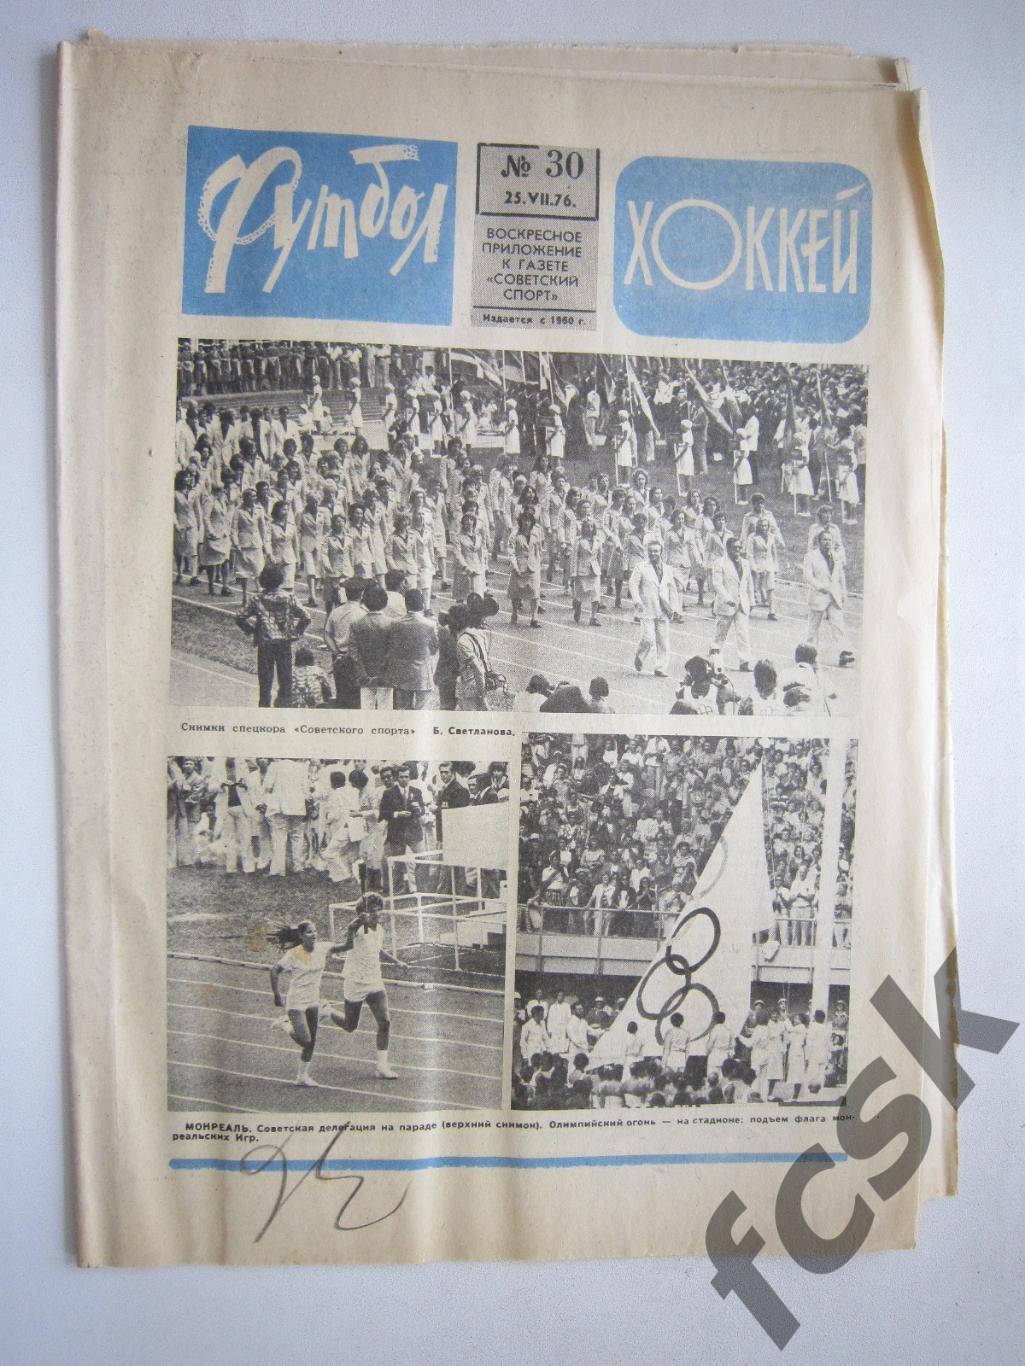 Еженедельник Футбол-Хоккей 1976 № 30 Московская правда (АВ-1)